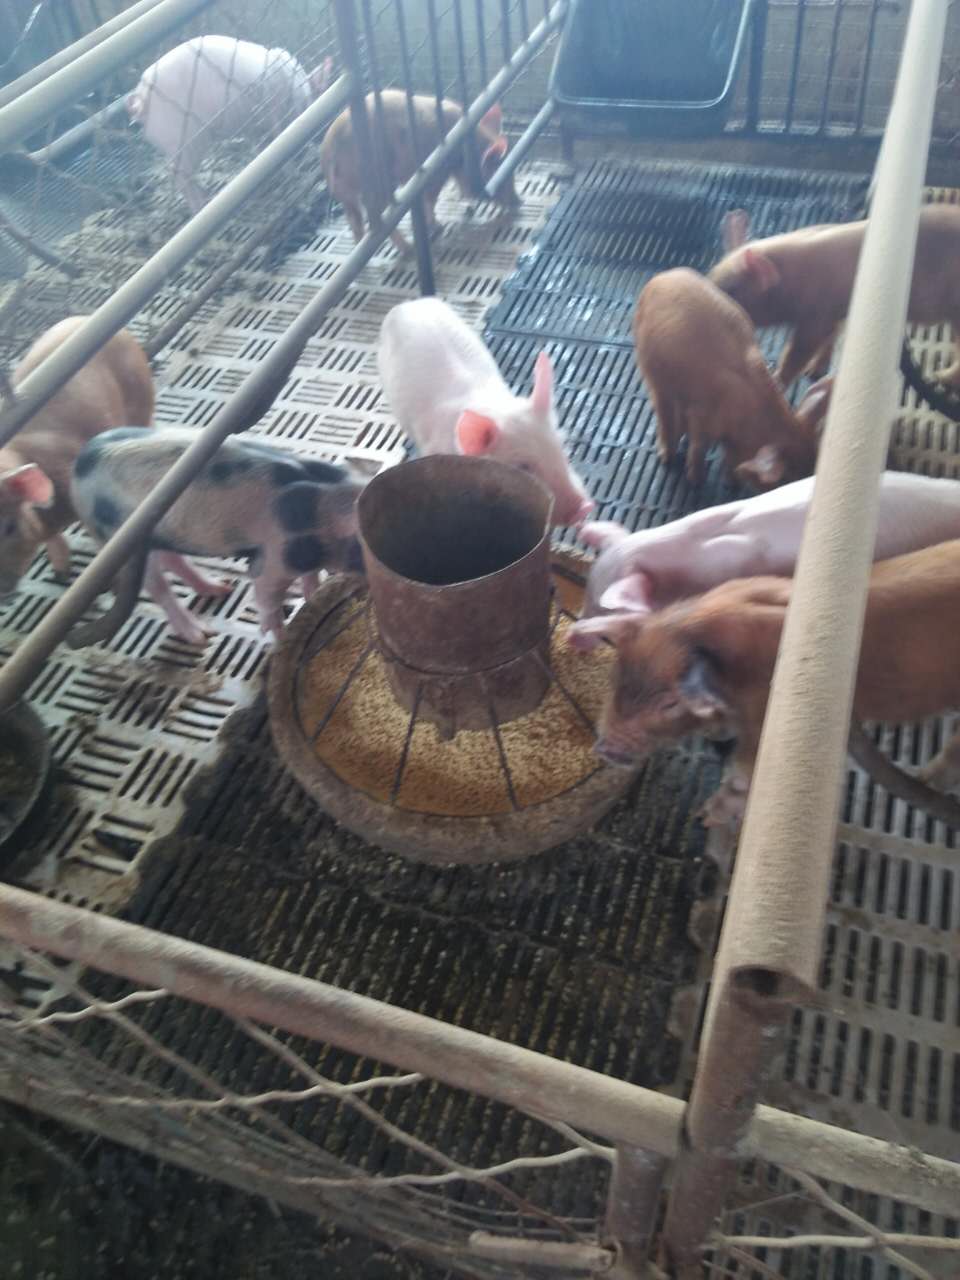 饶河县厂家大量批发生猪 养殖基地生猪价格